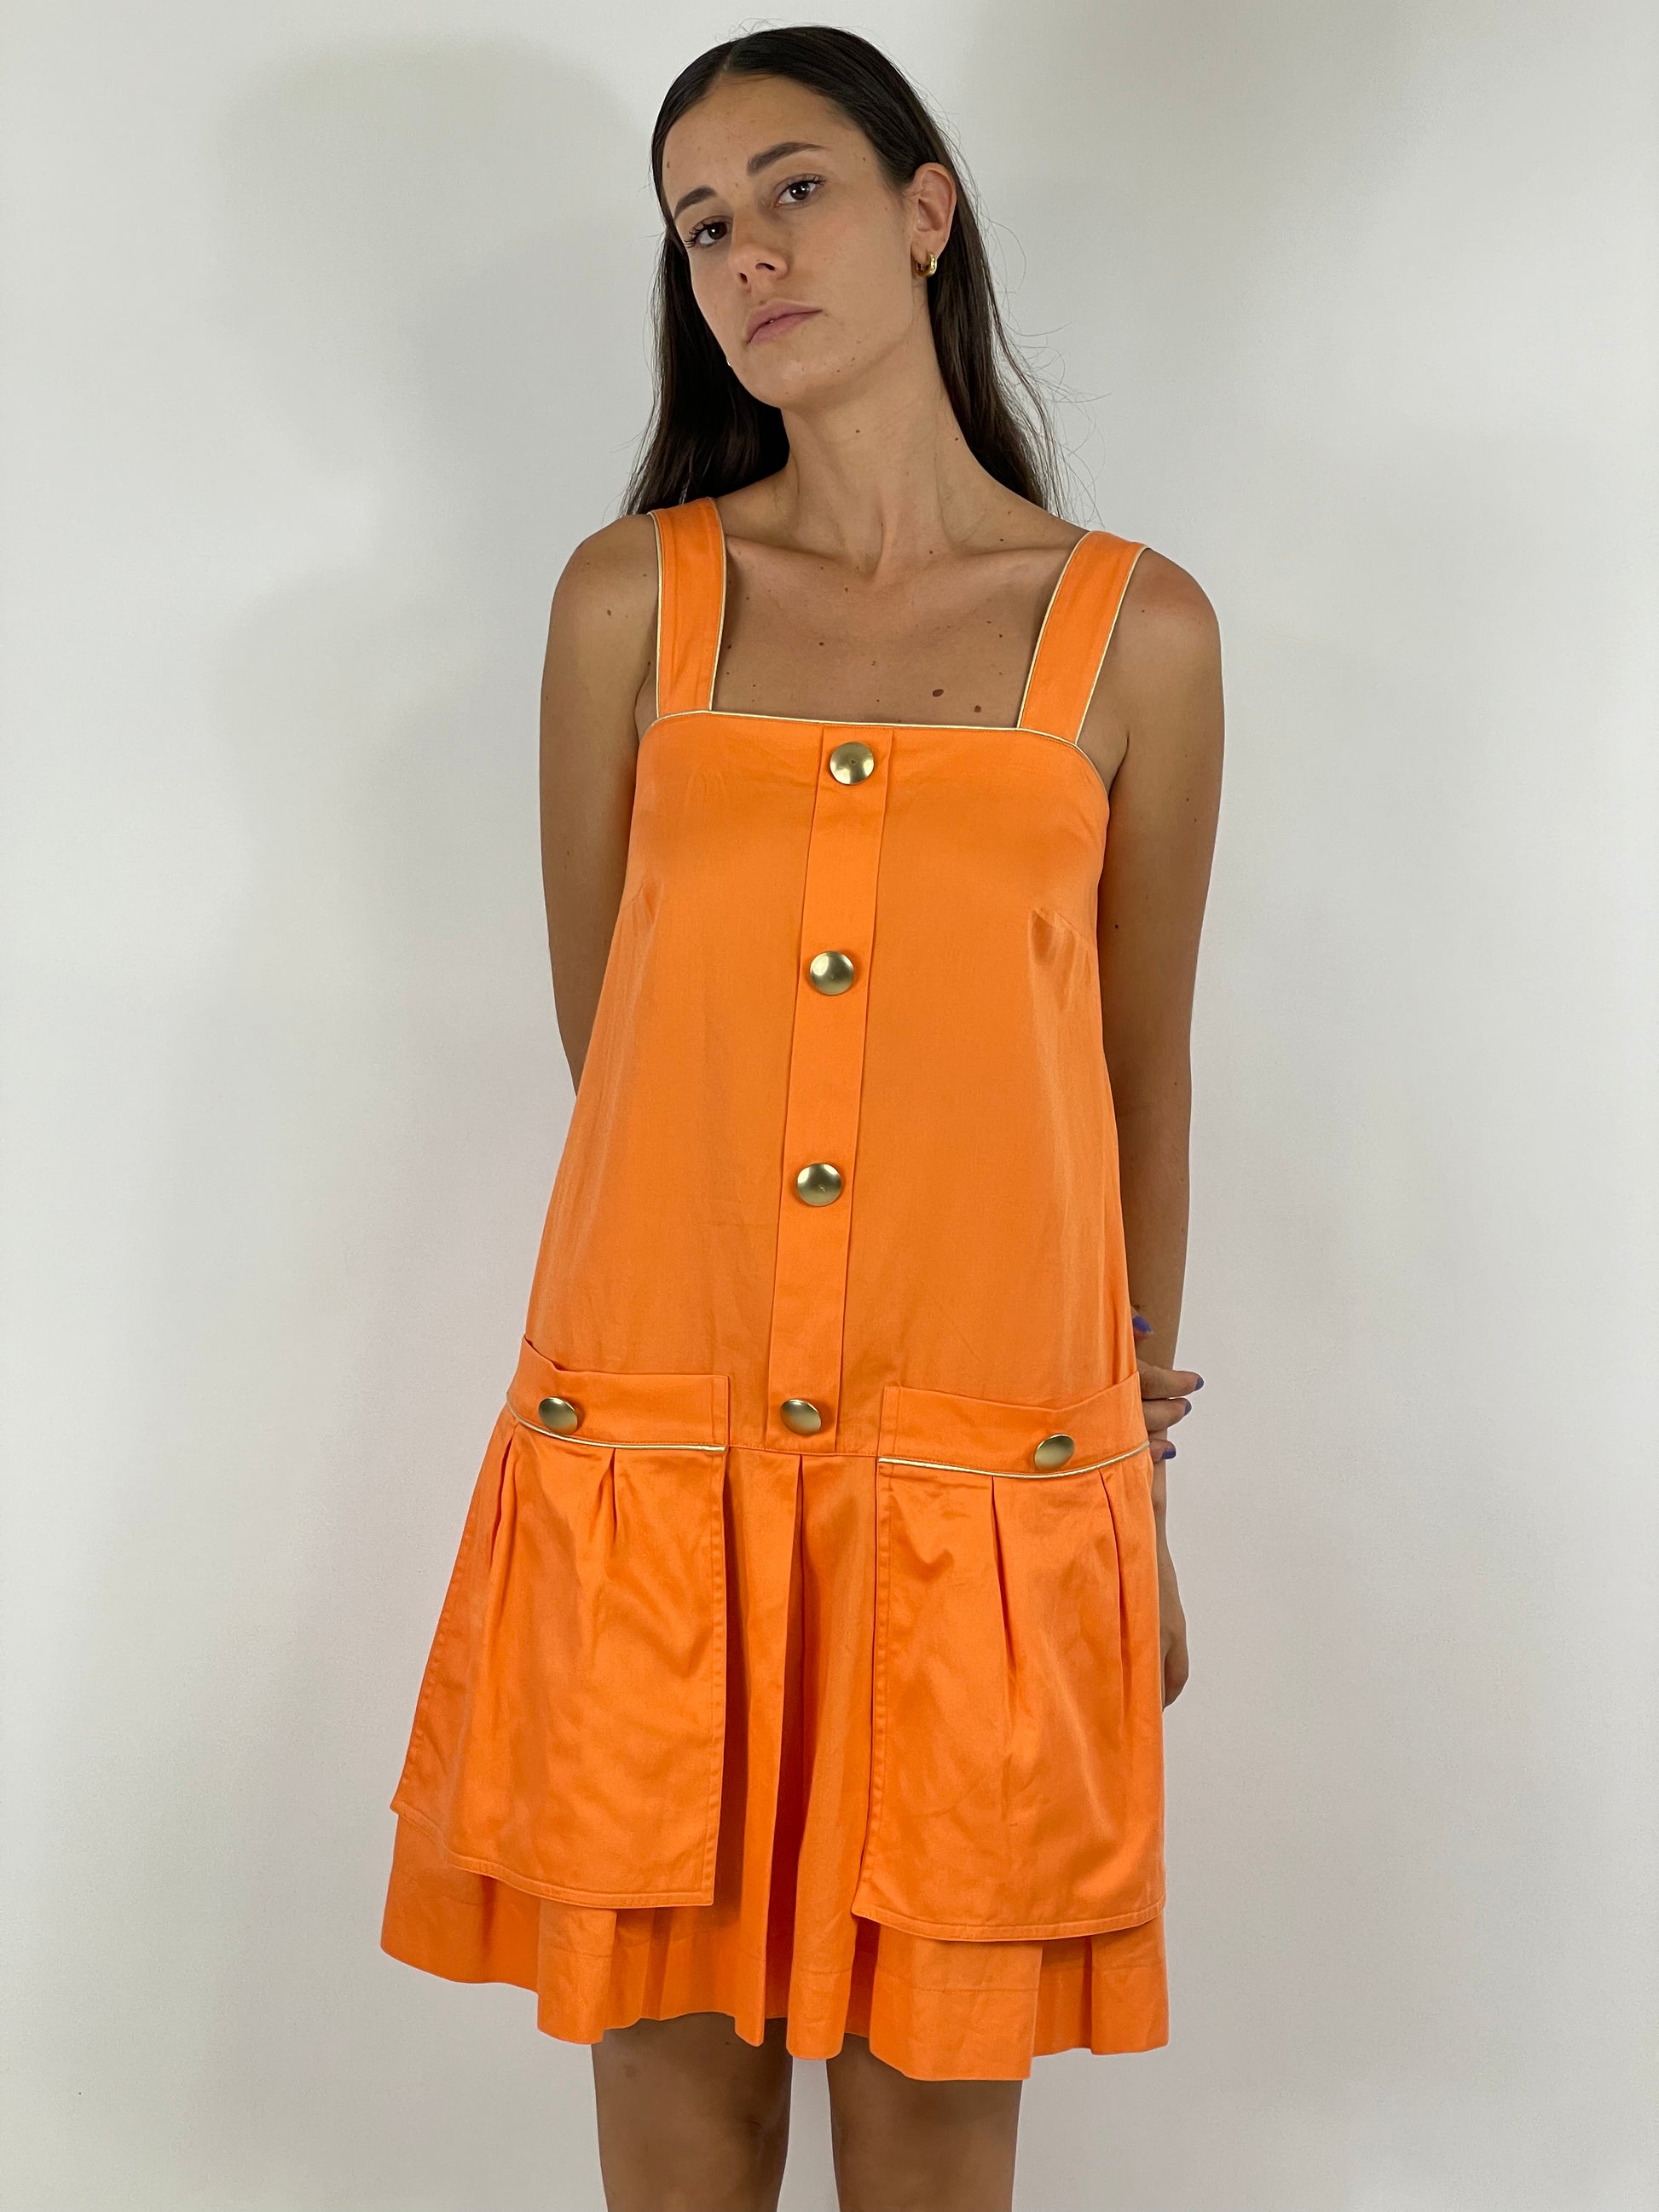 vestito-corto-gonna-ampia-con-2-tasche-bottoni-sul-davanti-colore-arancione